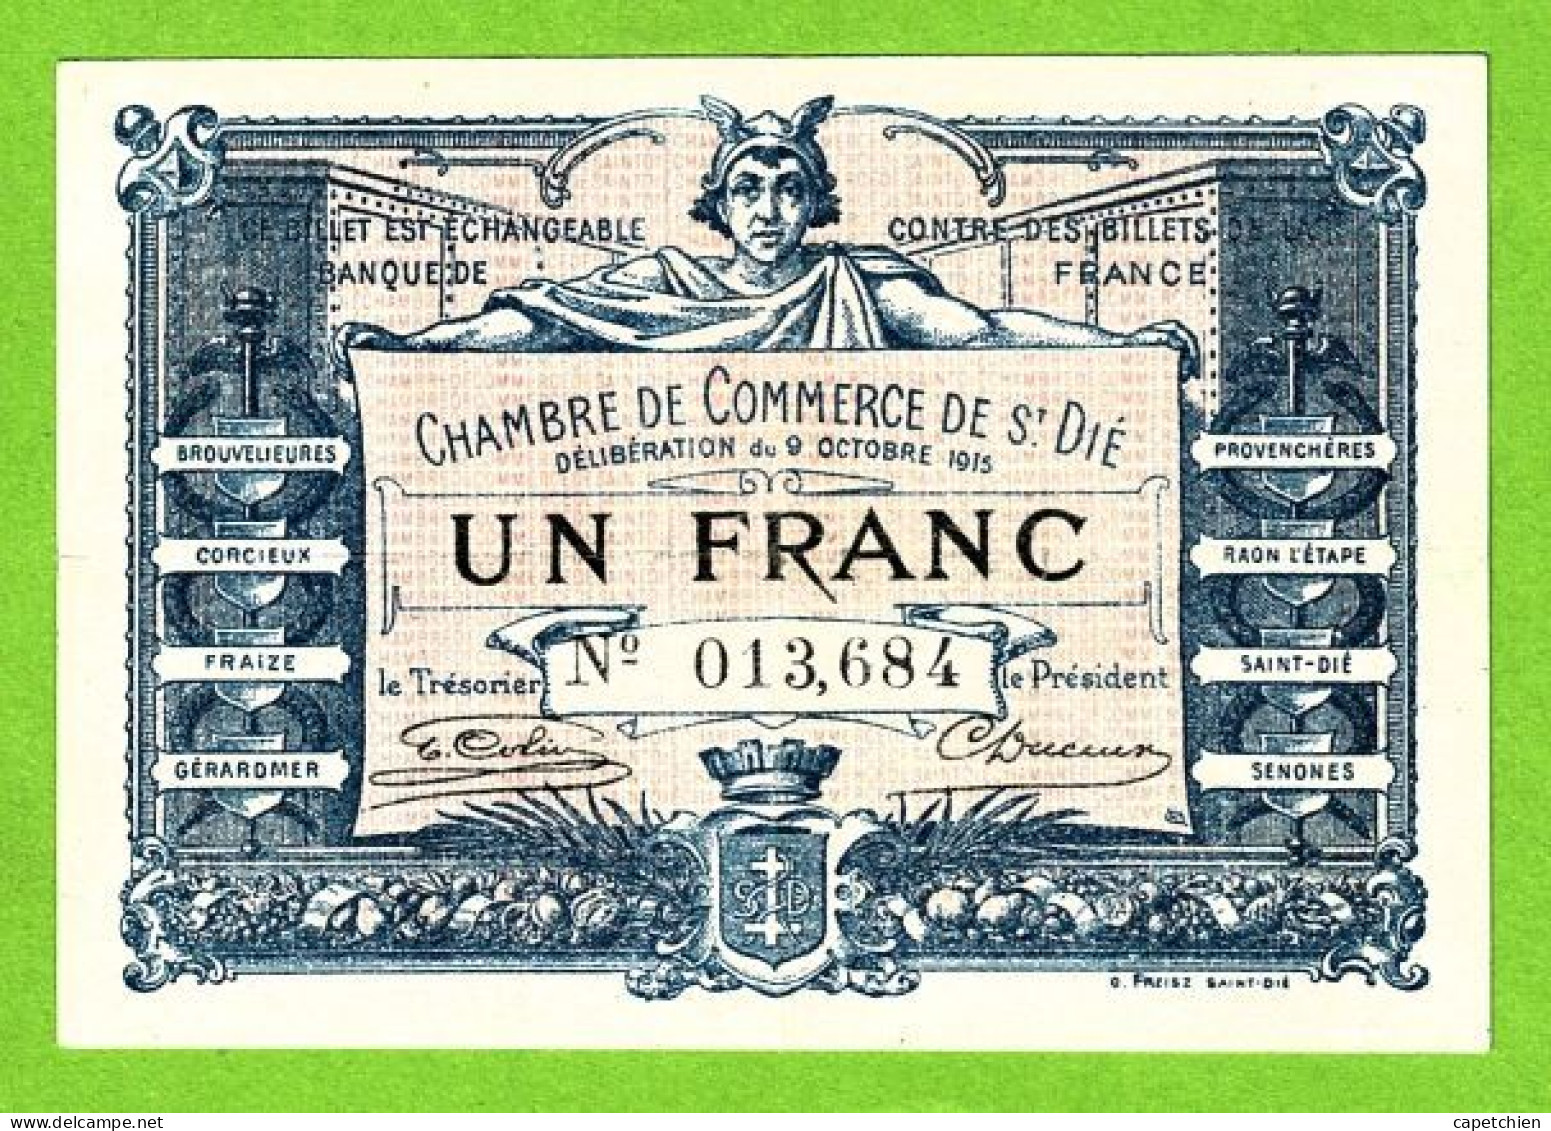 FRANCE / CHAMBRE DE COMMERCE De SAINT DIE / 1 FRANC / 9 OCTOBRE 1915 / 013,684 - Chambre De Commerce